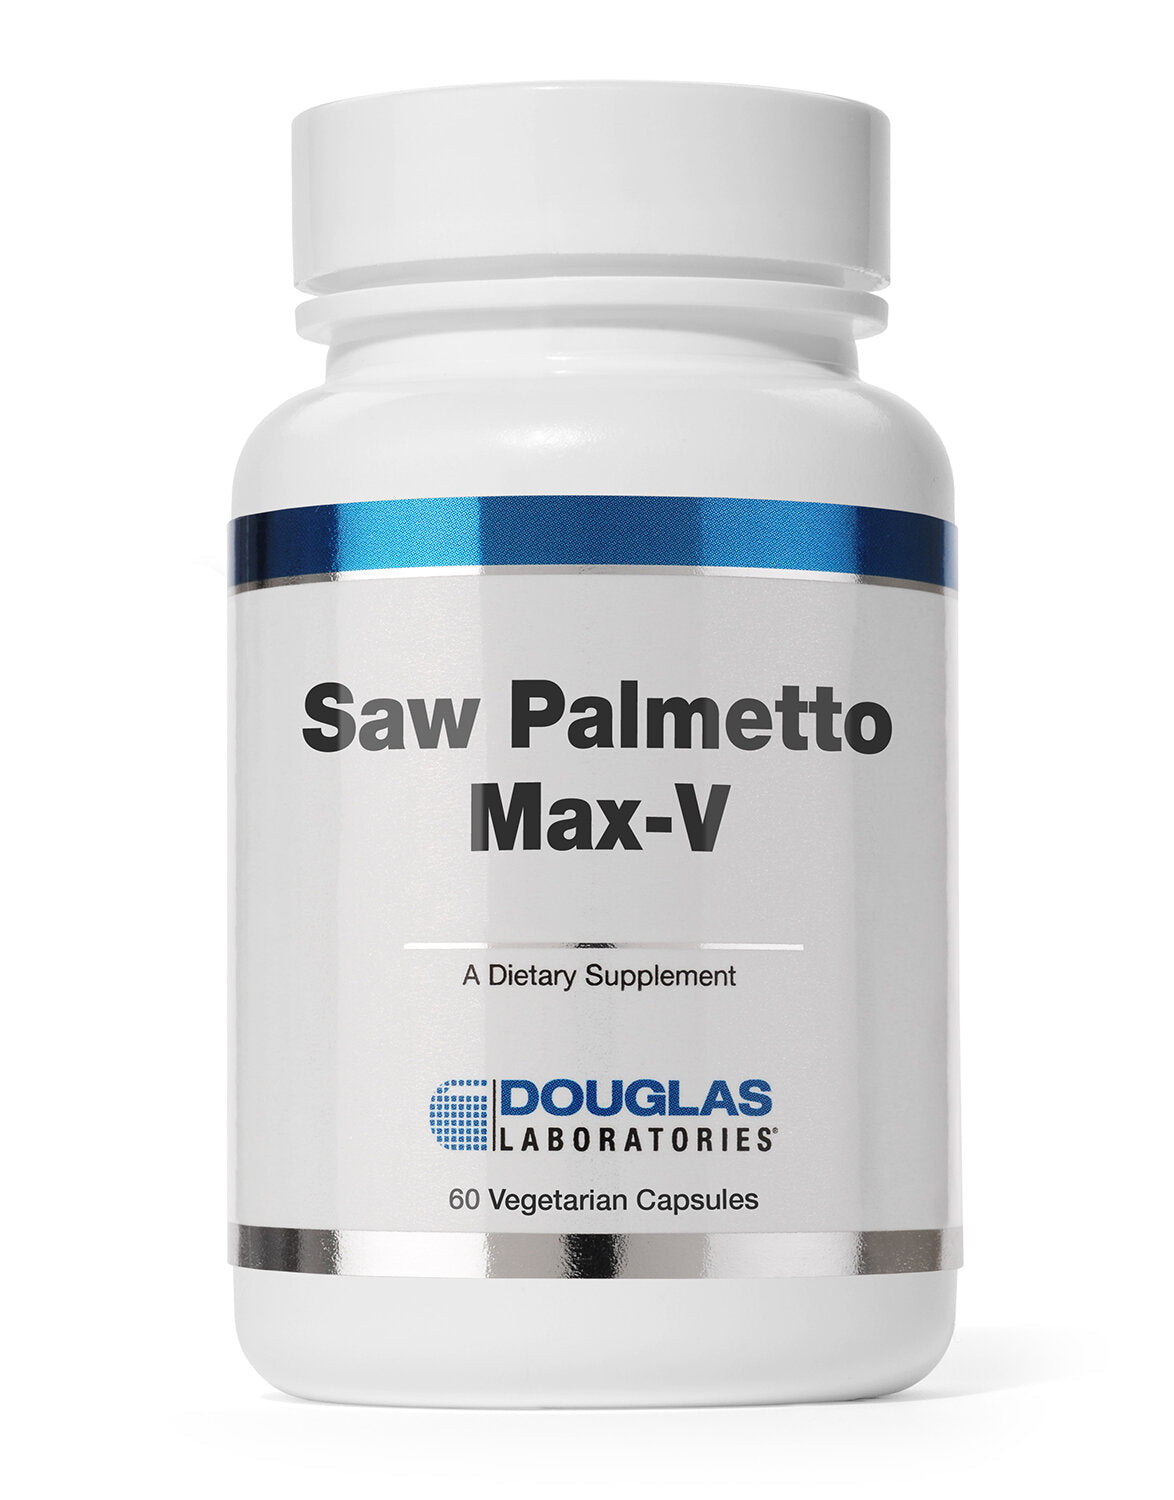 SAW PALMETTO MAX-V -Douglas Laboratories